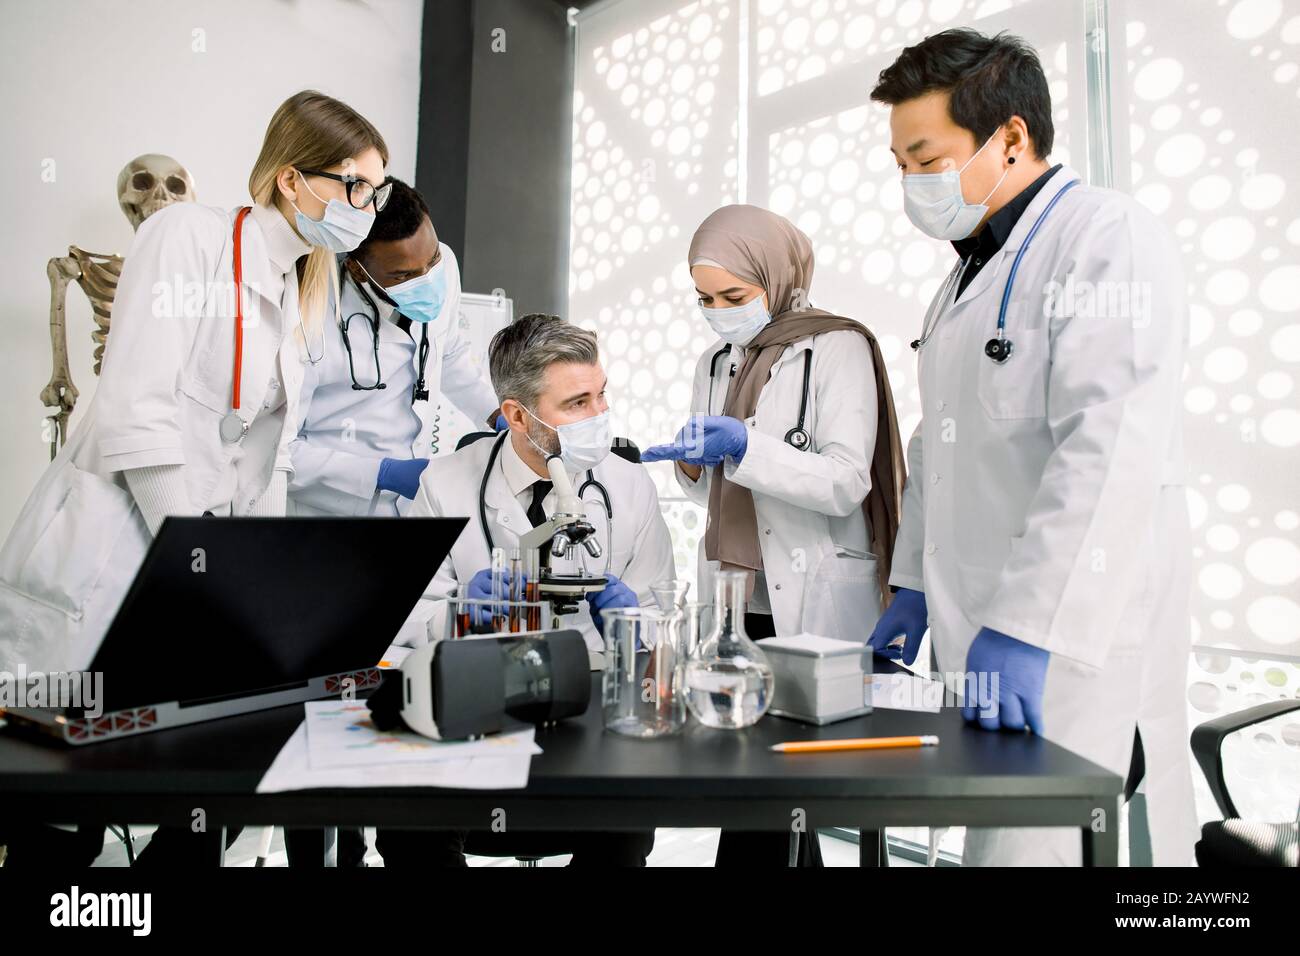 Konzept für Wissenschaft, Chemie, Technologie, Biologie und Medizin. Team multiethnischer junger Wissenschaftler, die während der wissenschaftlichen Forschung diskutieren Stockfoto